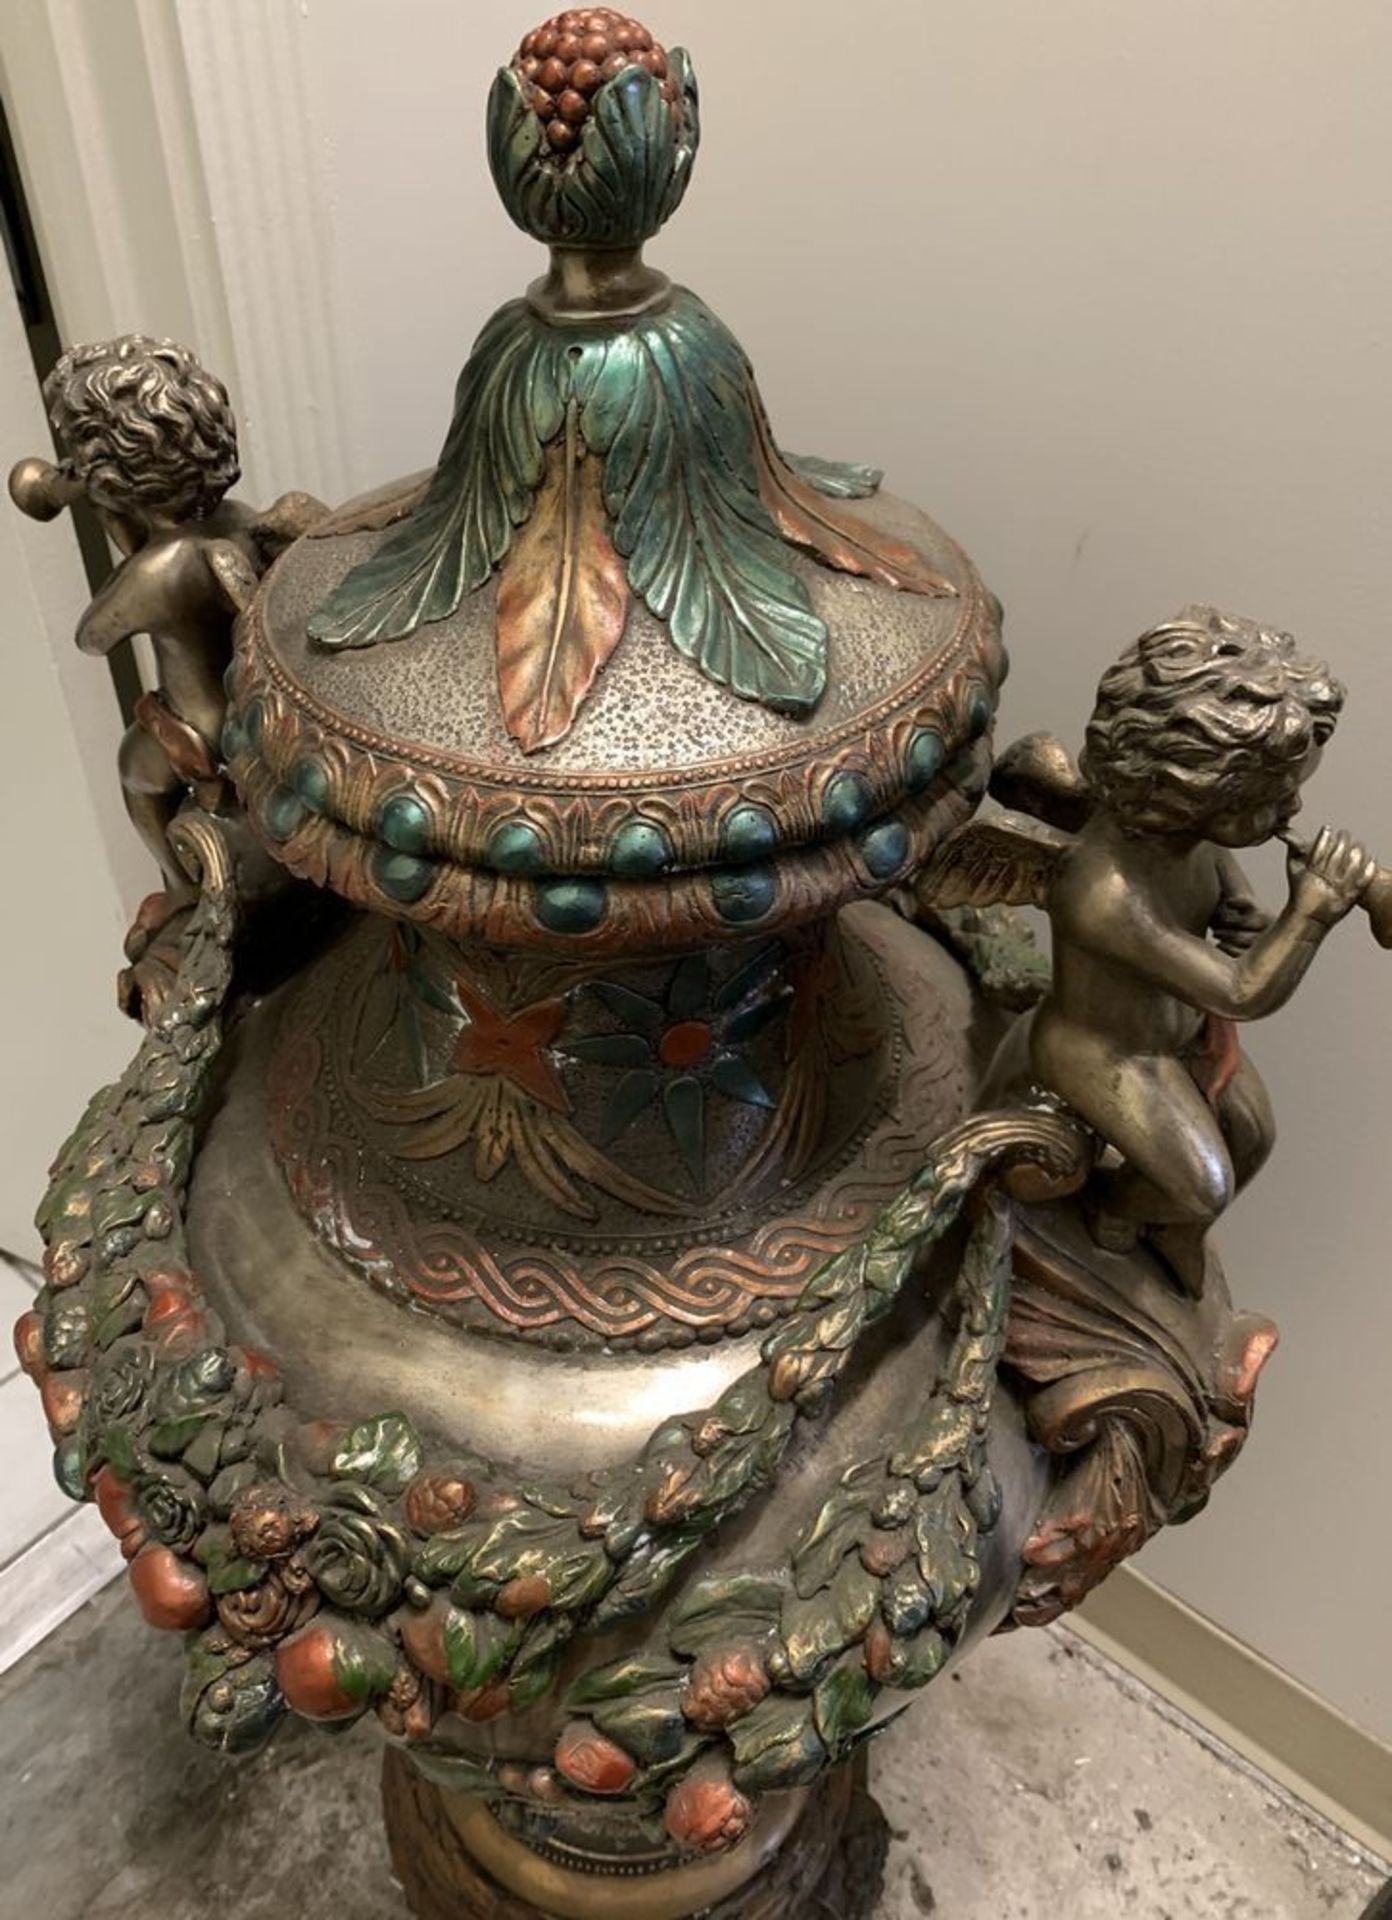 Bronze Vintage Urn Vase, Stands around 3.5' tall **If won, must be picked up in Chatsworth, CA. - Bild 4 aus 5